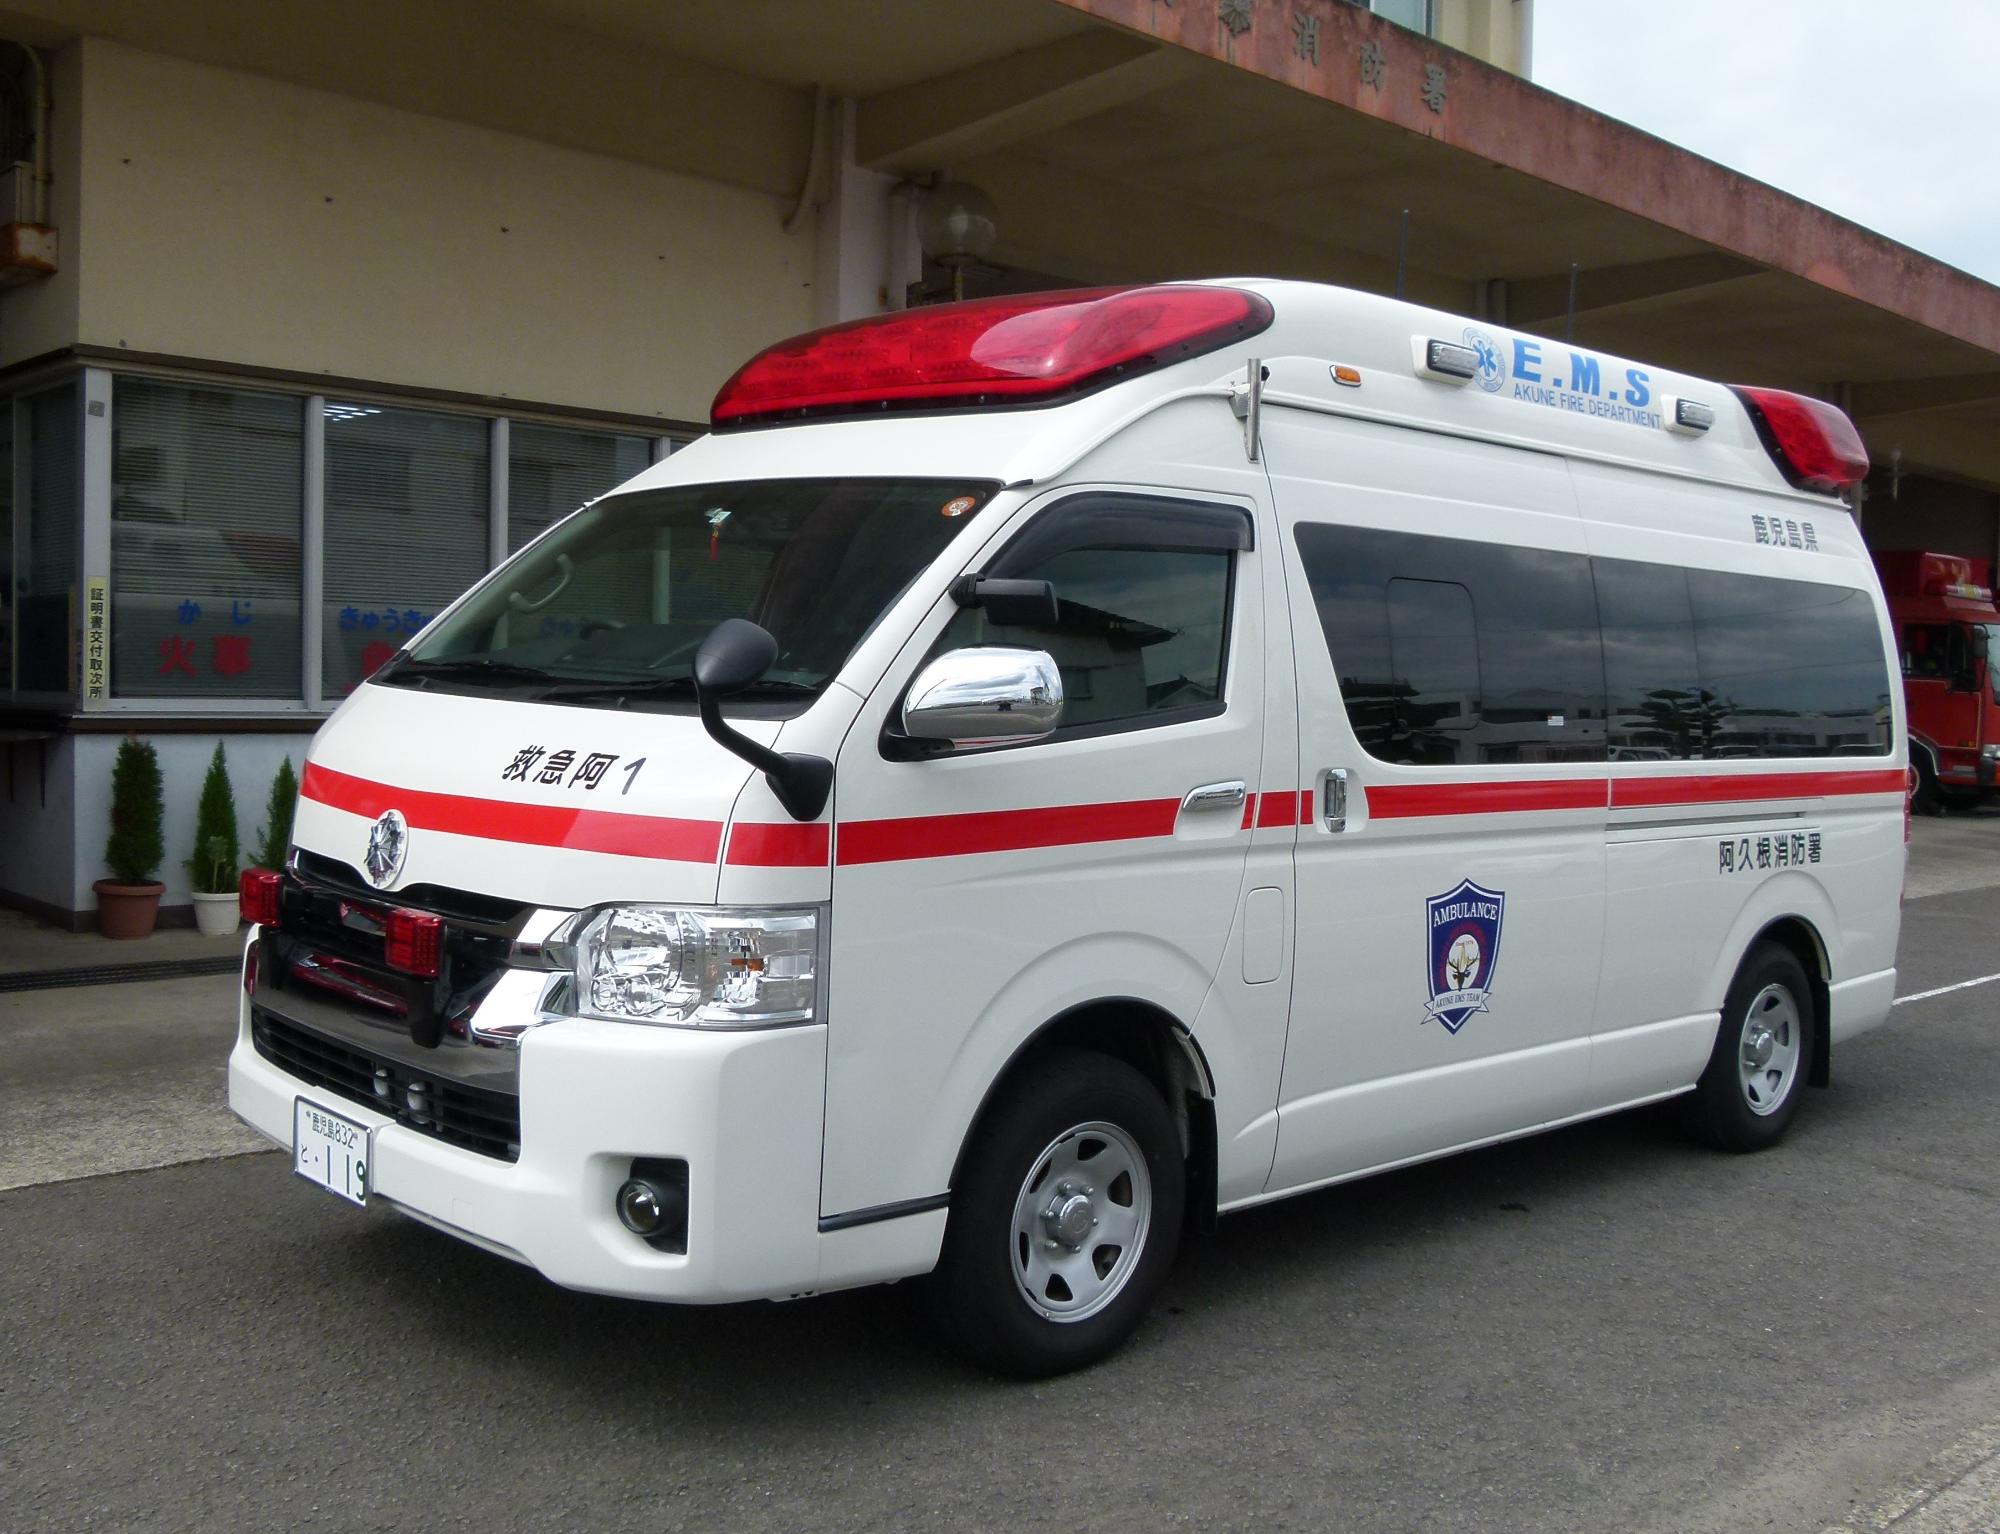 白塗りに一本の赤い横線がある高規格救急自動車（救急1号）の写真